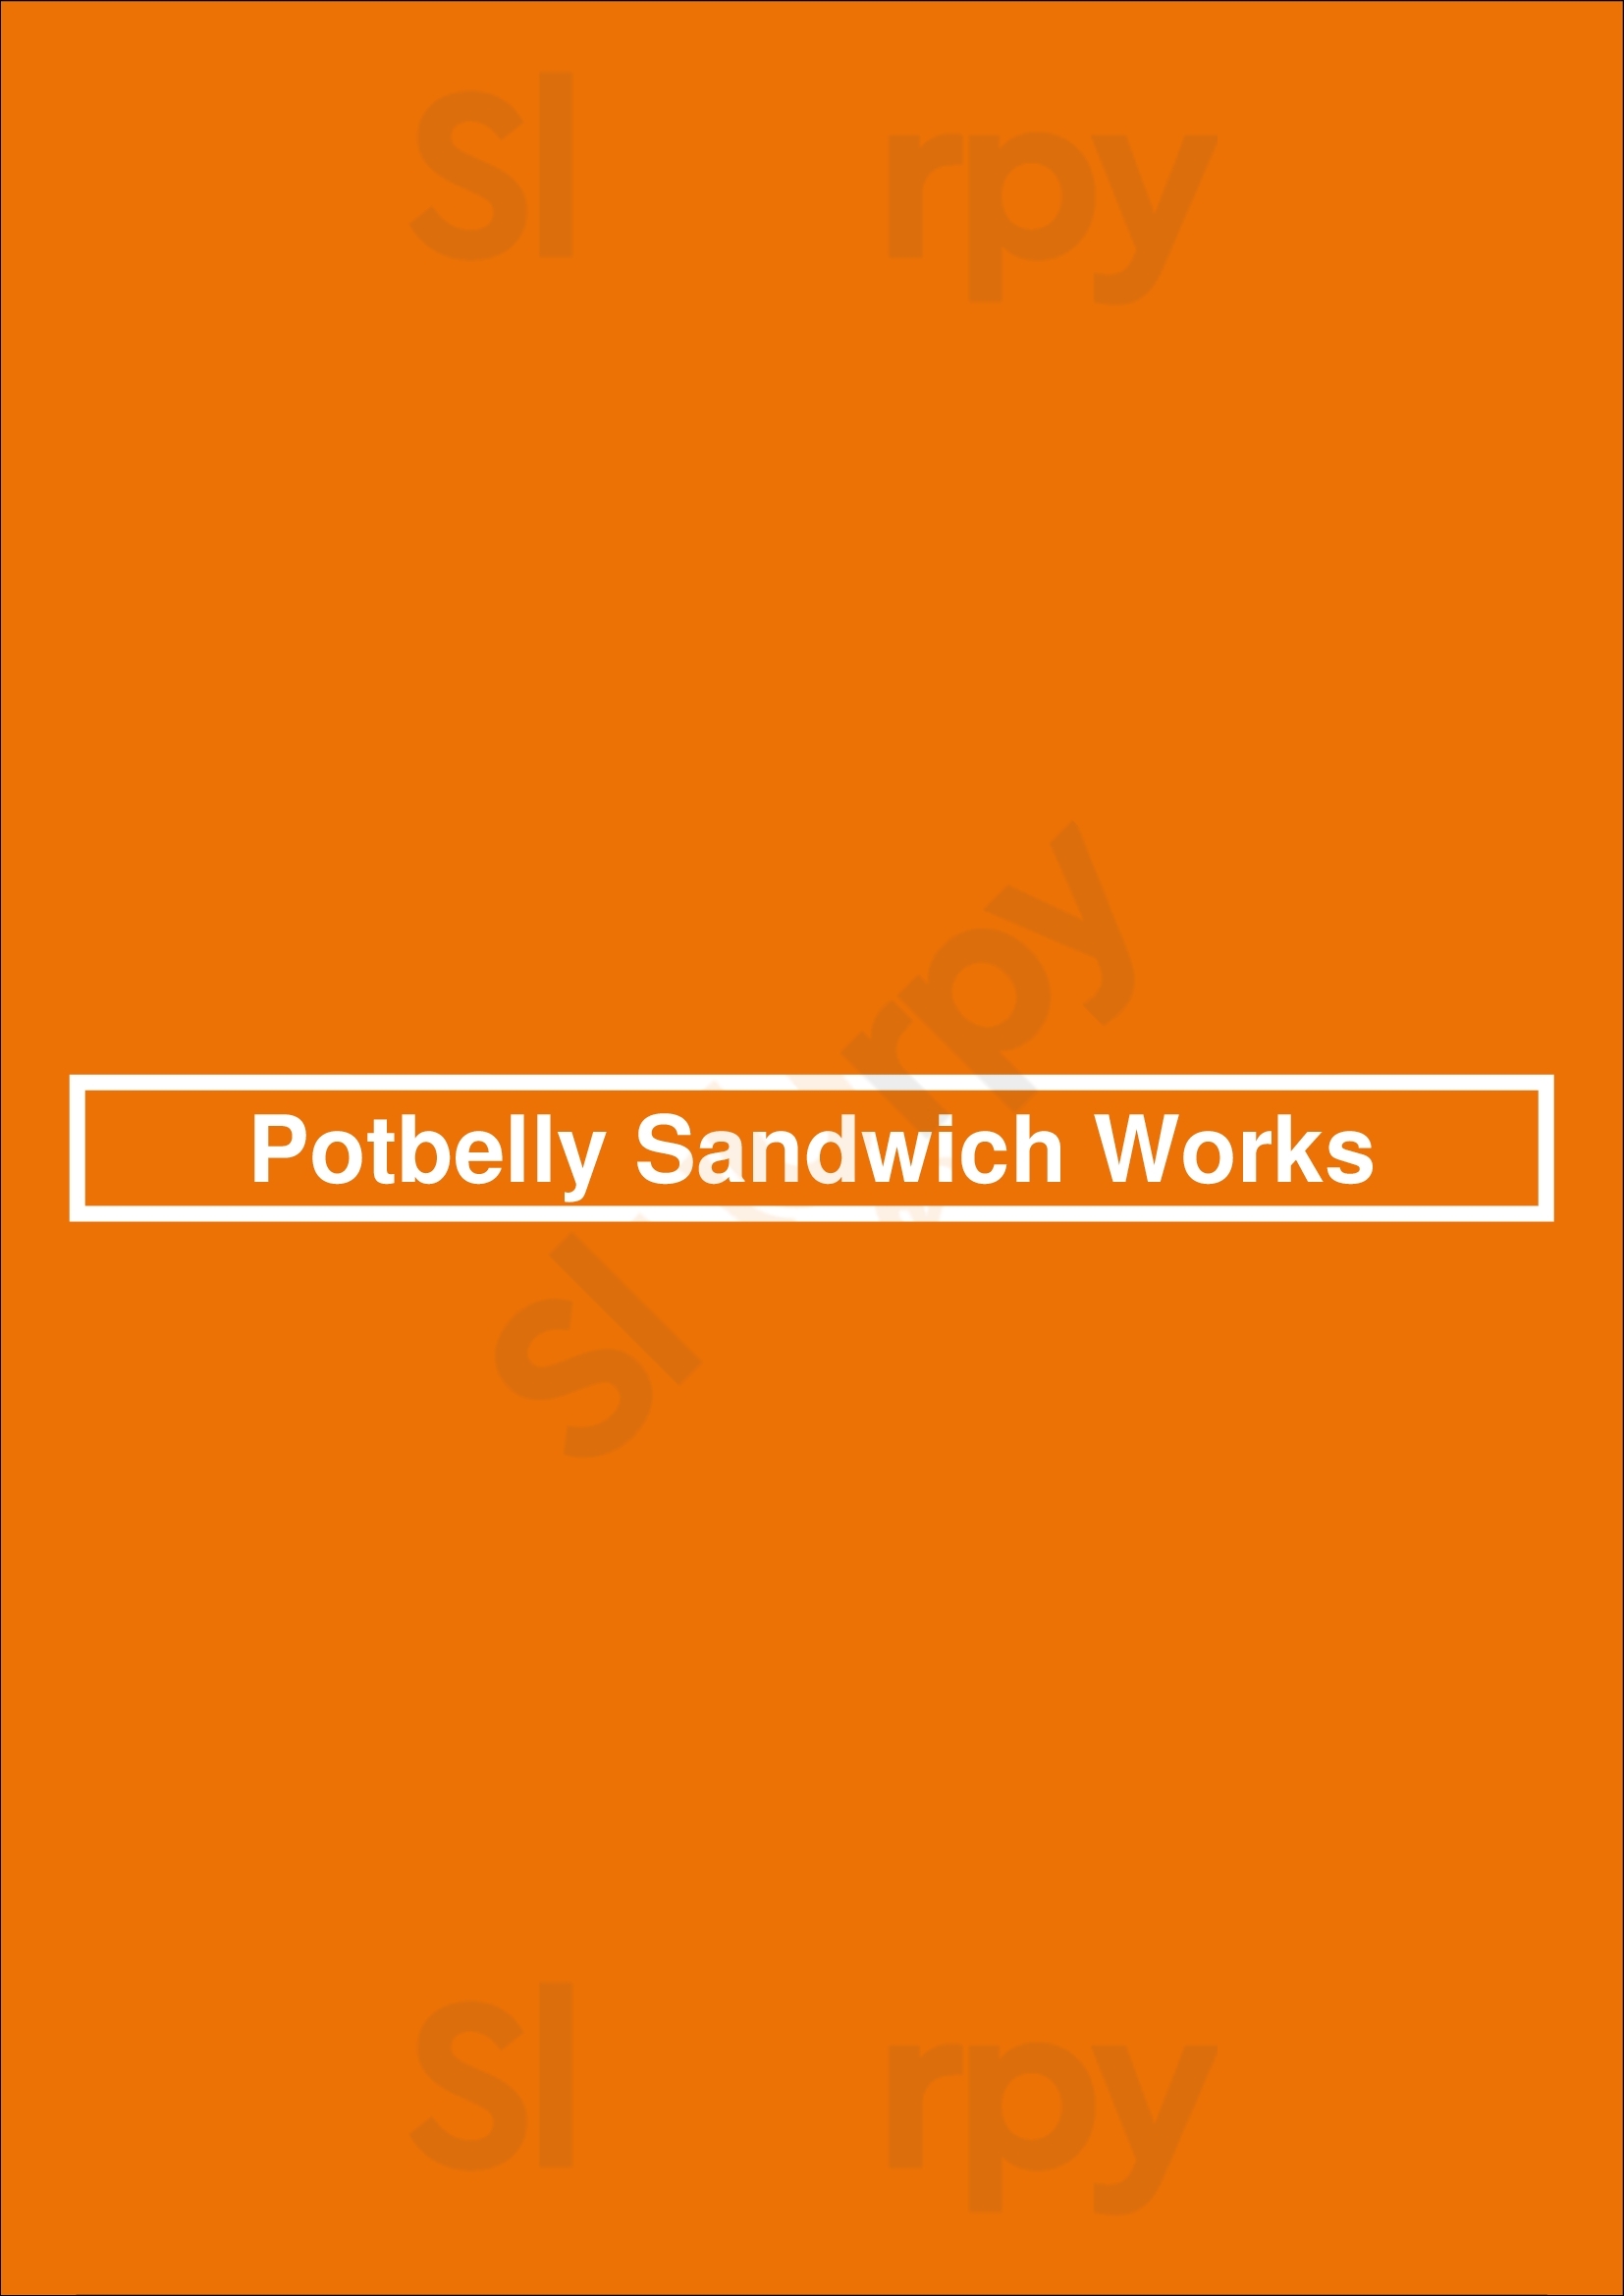 Potbelly Sandwich Shop Brooklyn Menu - 1